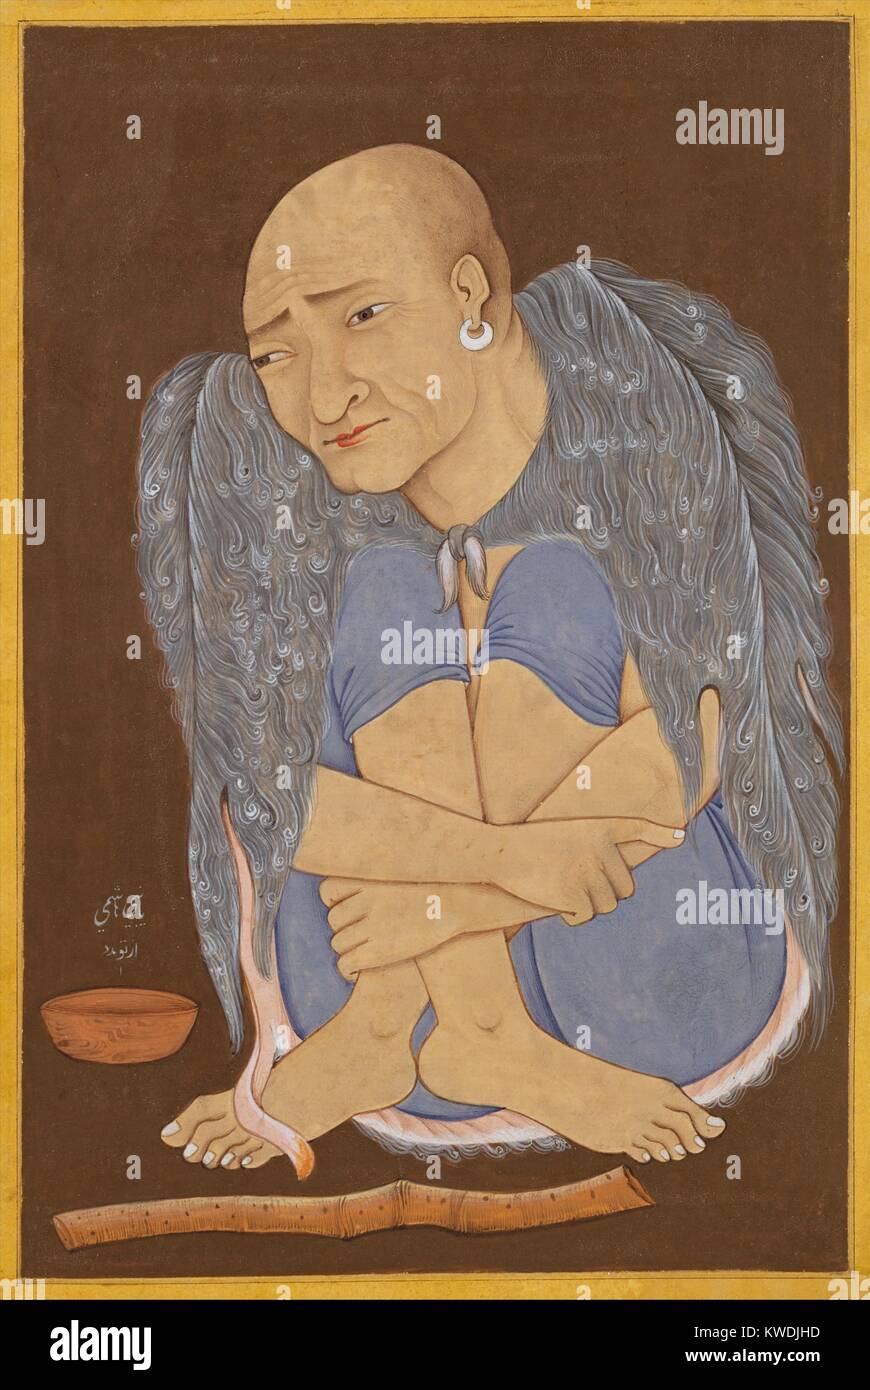 Porträt EINES SUFI, Indische, Mughal Malerei, 1600-1620 s, Tinte, opak Aquarell, Gold auf Papier. Sufis waren muslimische Mystiker, die der materiellen Welt verzichtete. In einer meditativen Haltung, er ist in der rauhen Fell gekleidet, hat ein Almosen Schale und eine Flöte (BSLOC 2017 16 31) Stockfoto